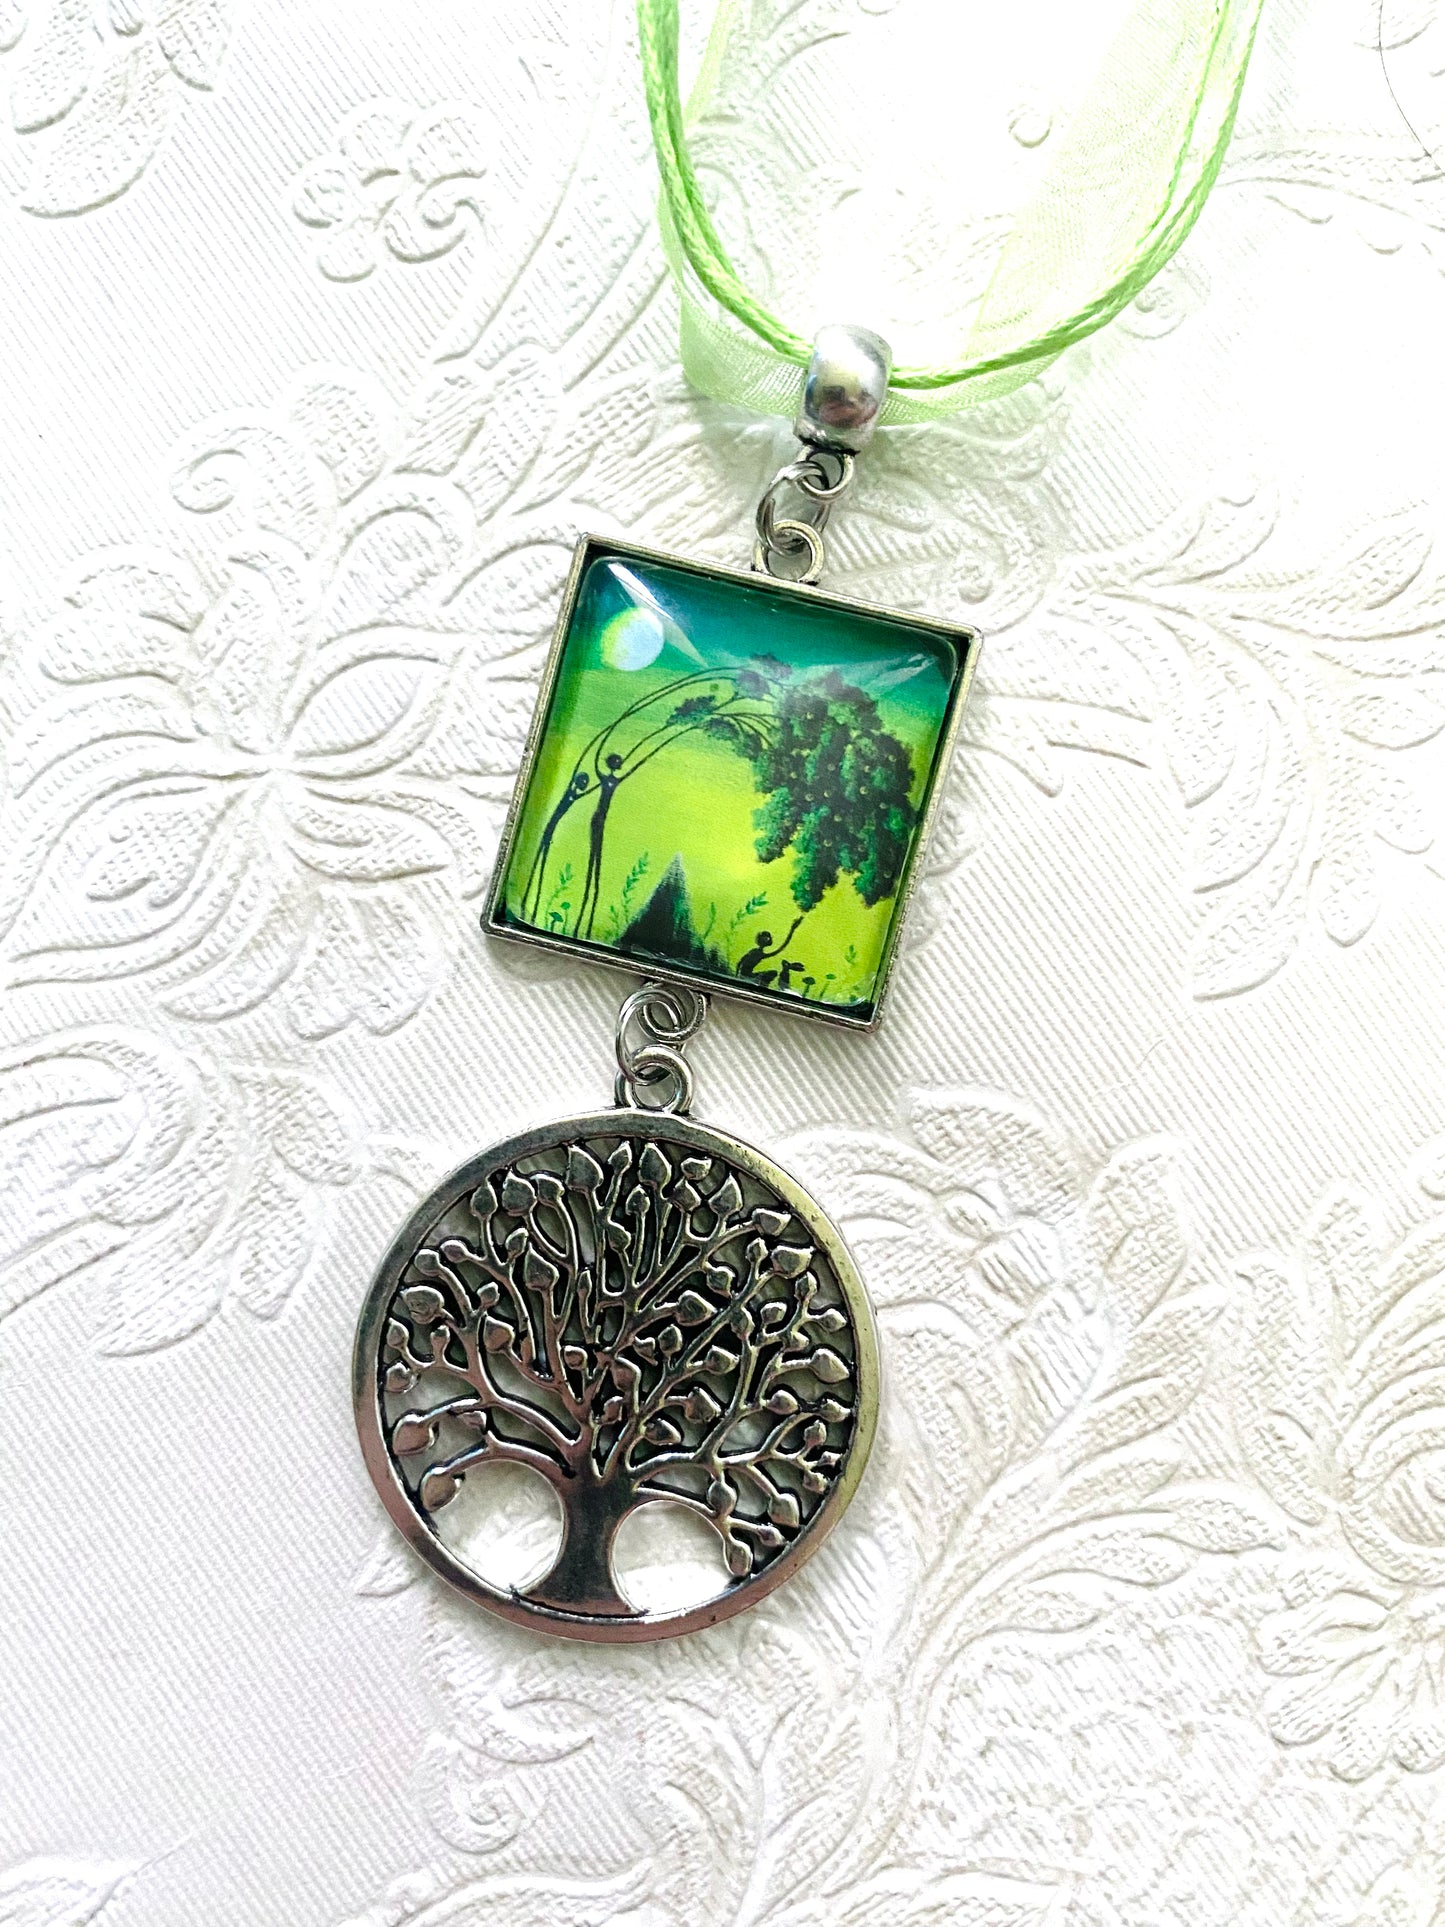 Square pendant with tree of life charm / Négyzetes medál életfa charmmal, egyedi grafikával